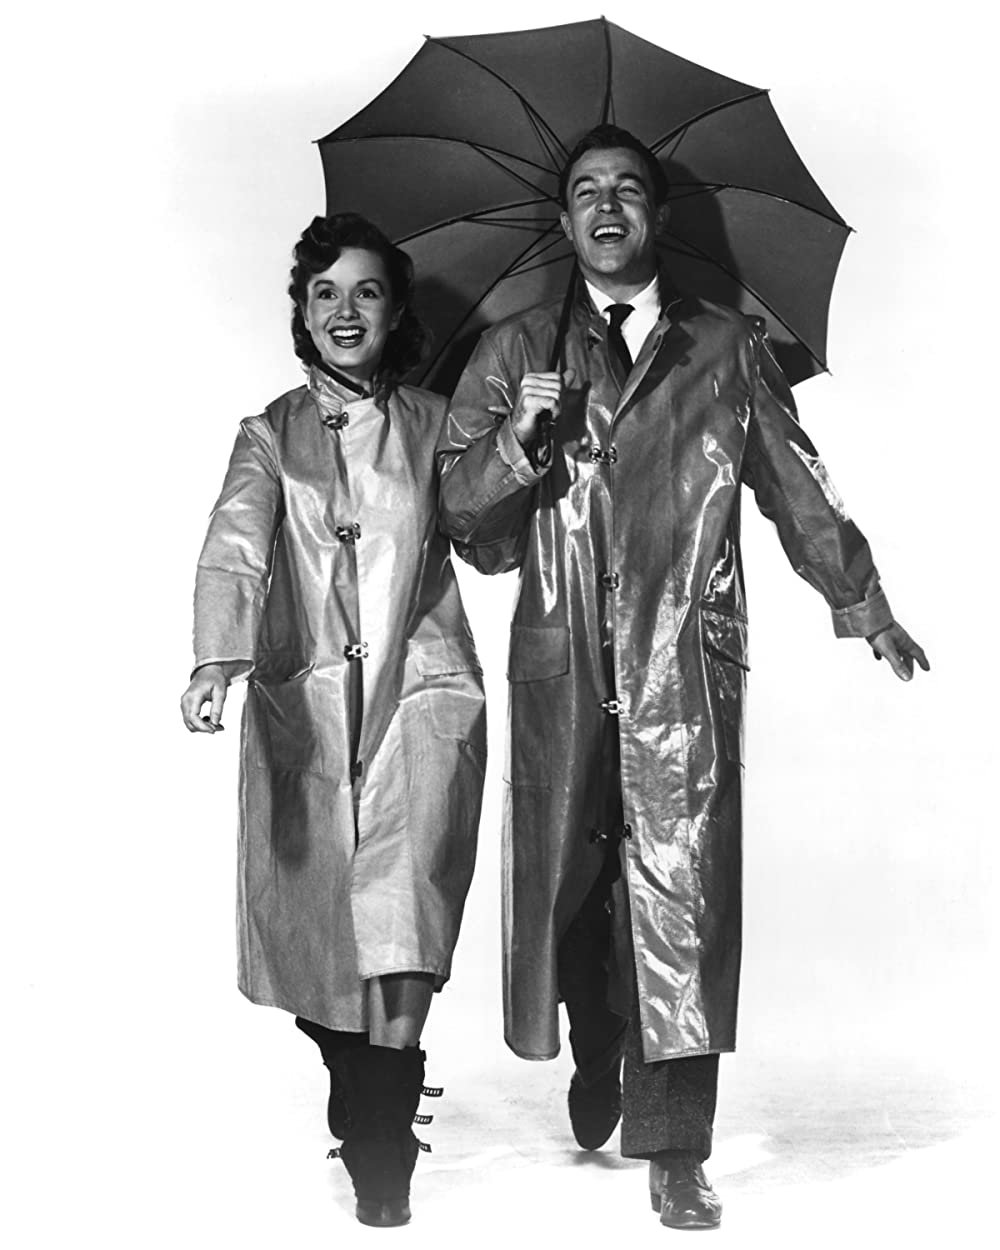 「雨に唄えば」ジーン・ケリー & デビー・レイノルズの画像